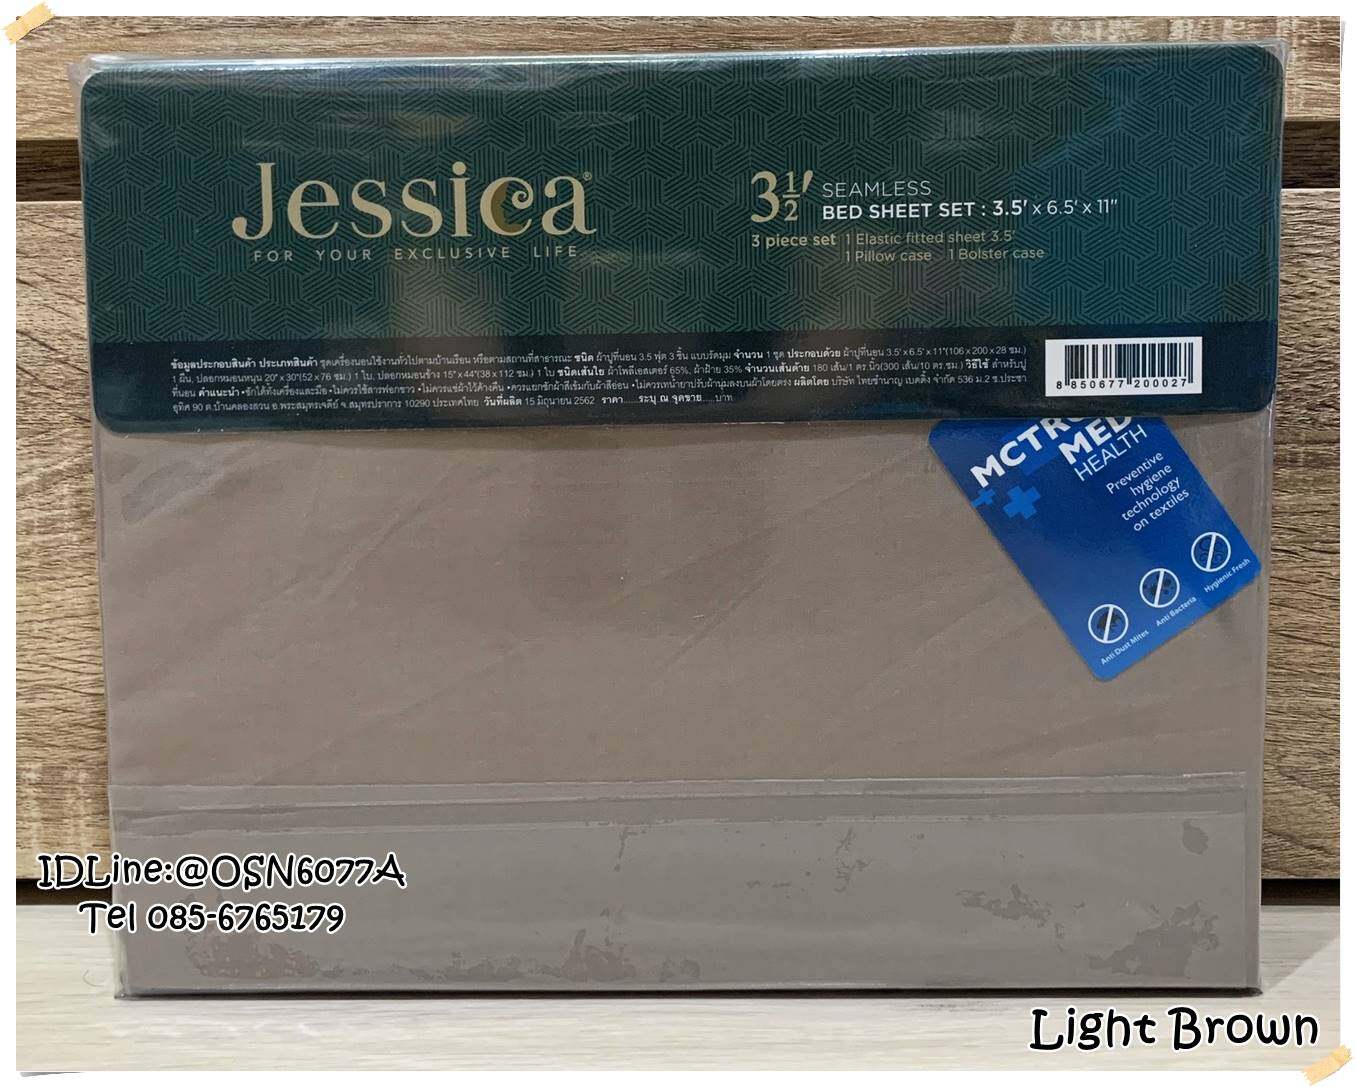 JESSICE ชุดผ้าปูที่นอน (ไม่รวมผ้านวม)  เจสสิก้า สีพื้น ลิขสิทธิ์แท้100% No.1130 สี Light Brown สี Light Brownขนาดสินค้า 5 ฟุตลักษณะสินค้า ชุดผ้าปูที่นอน